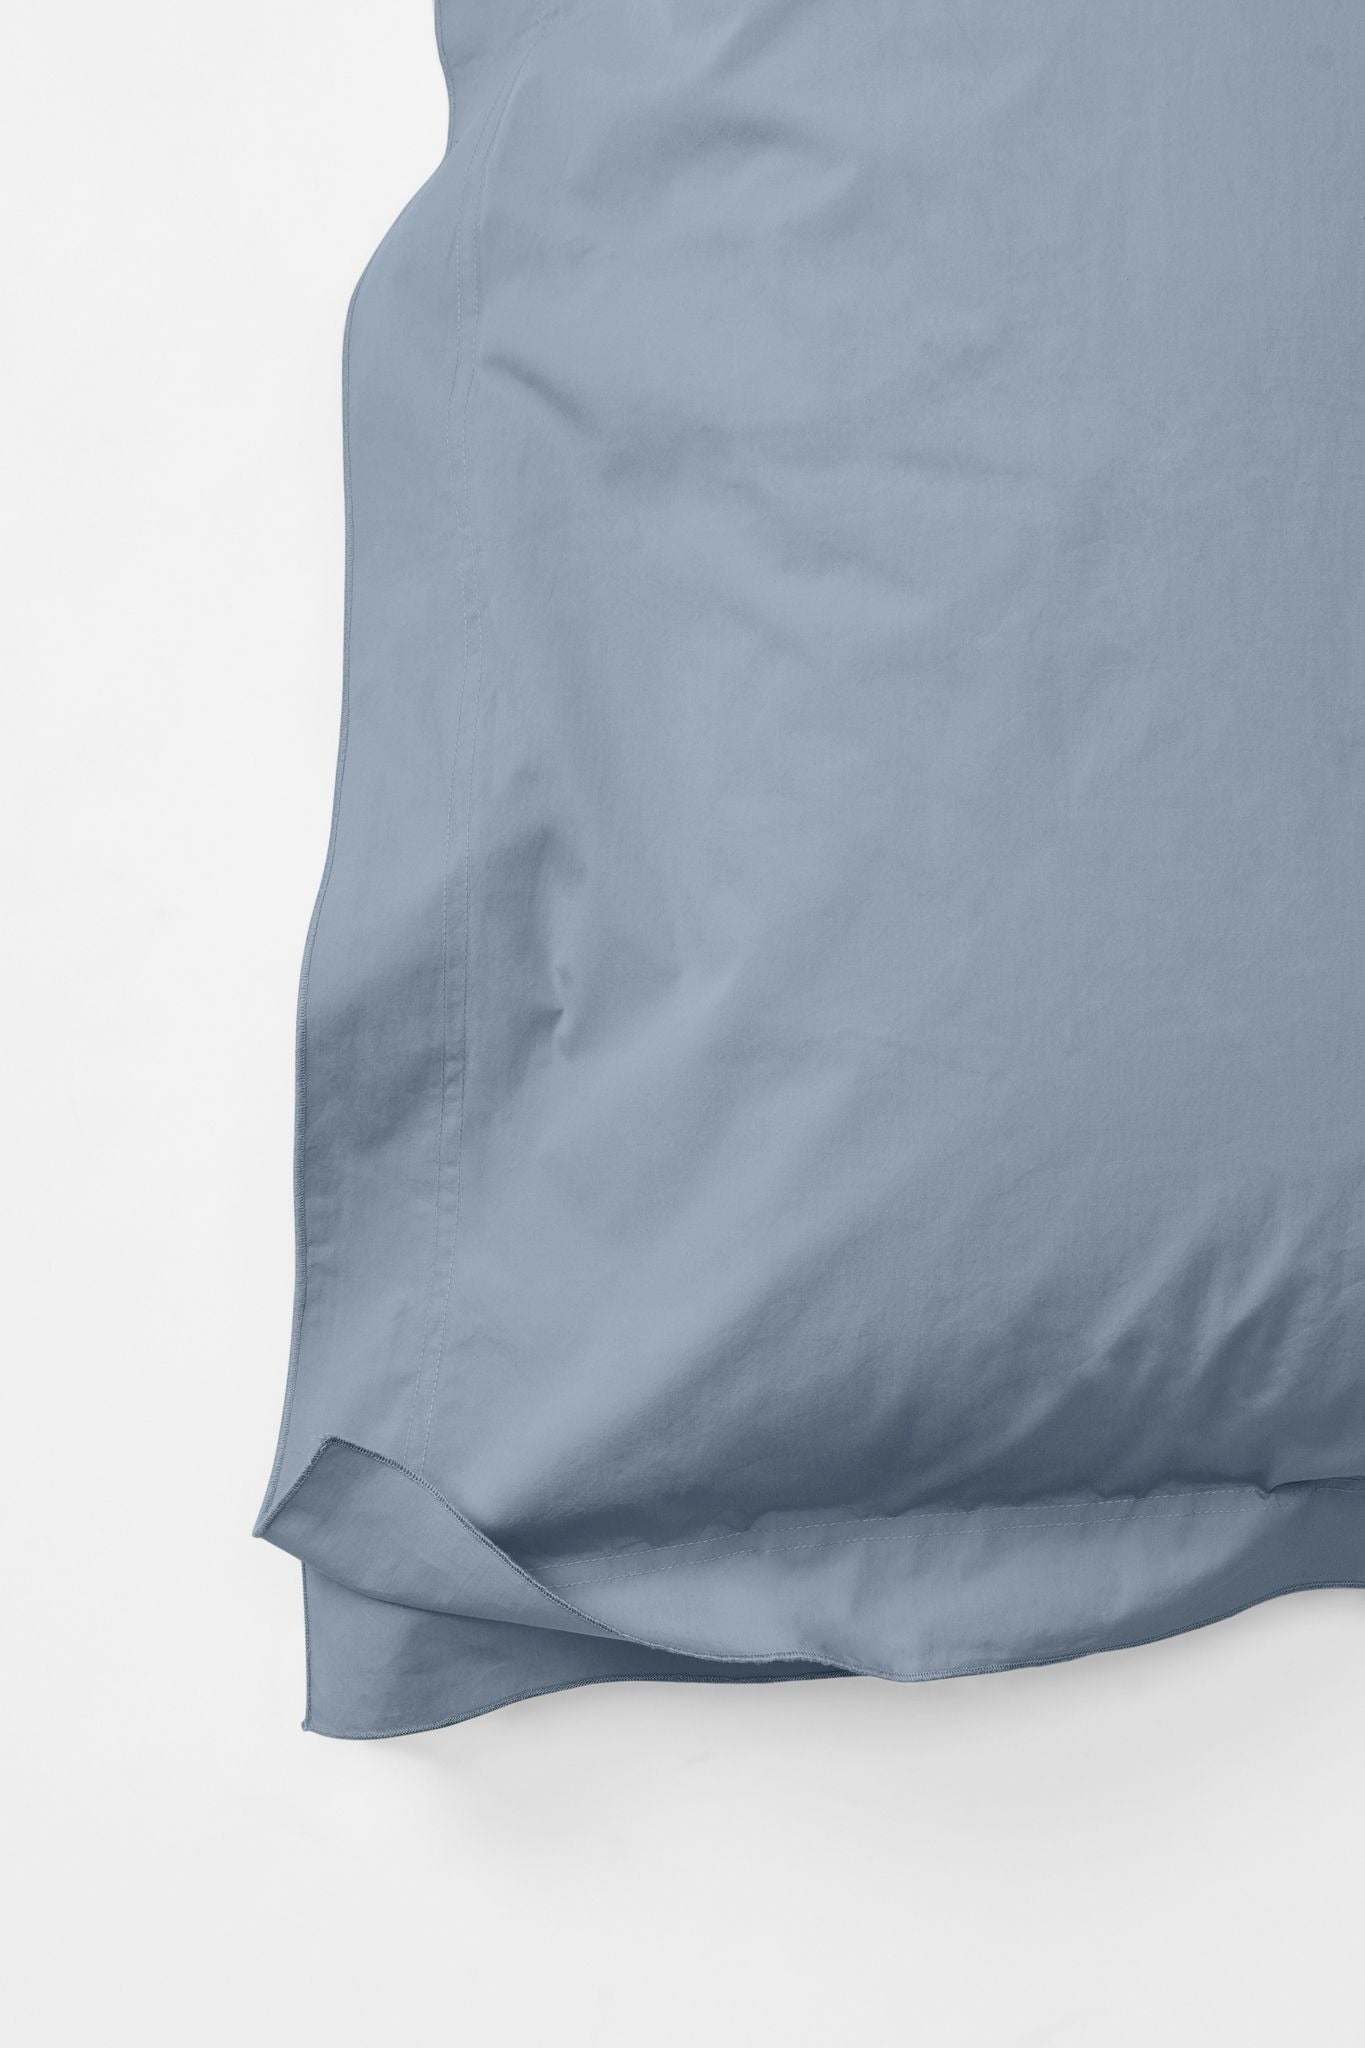 Mono Organic Cotton Percale Pillow Pair - Half Blue Pillows in Euro Pillow